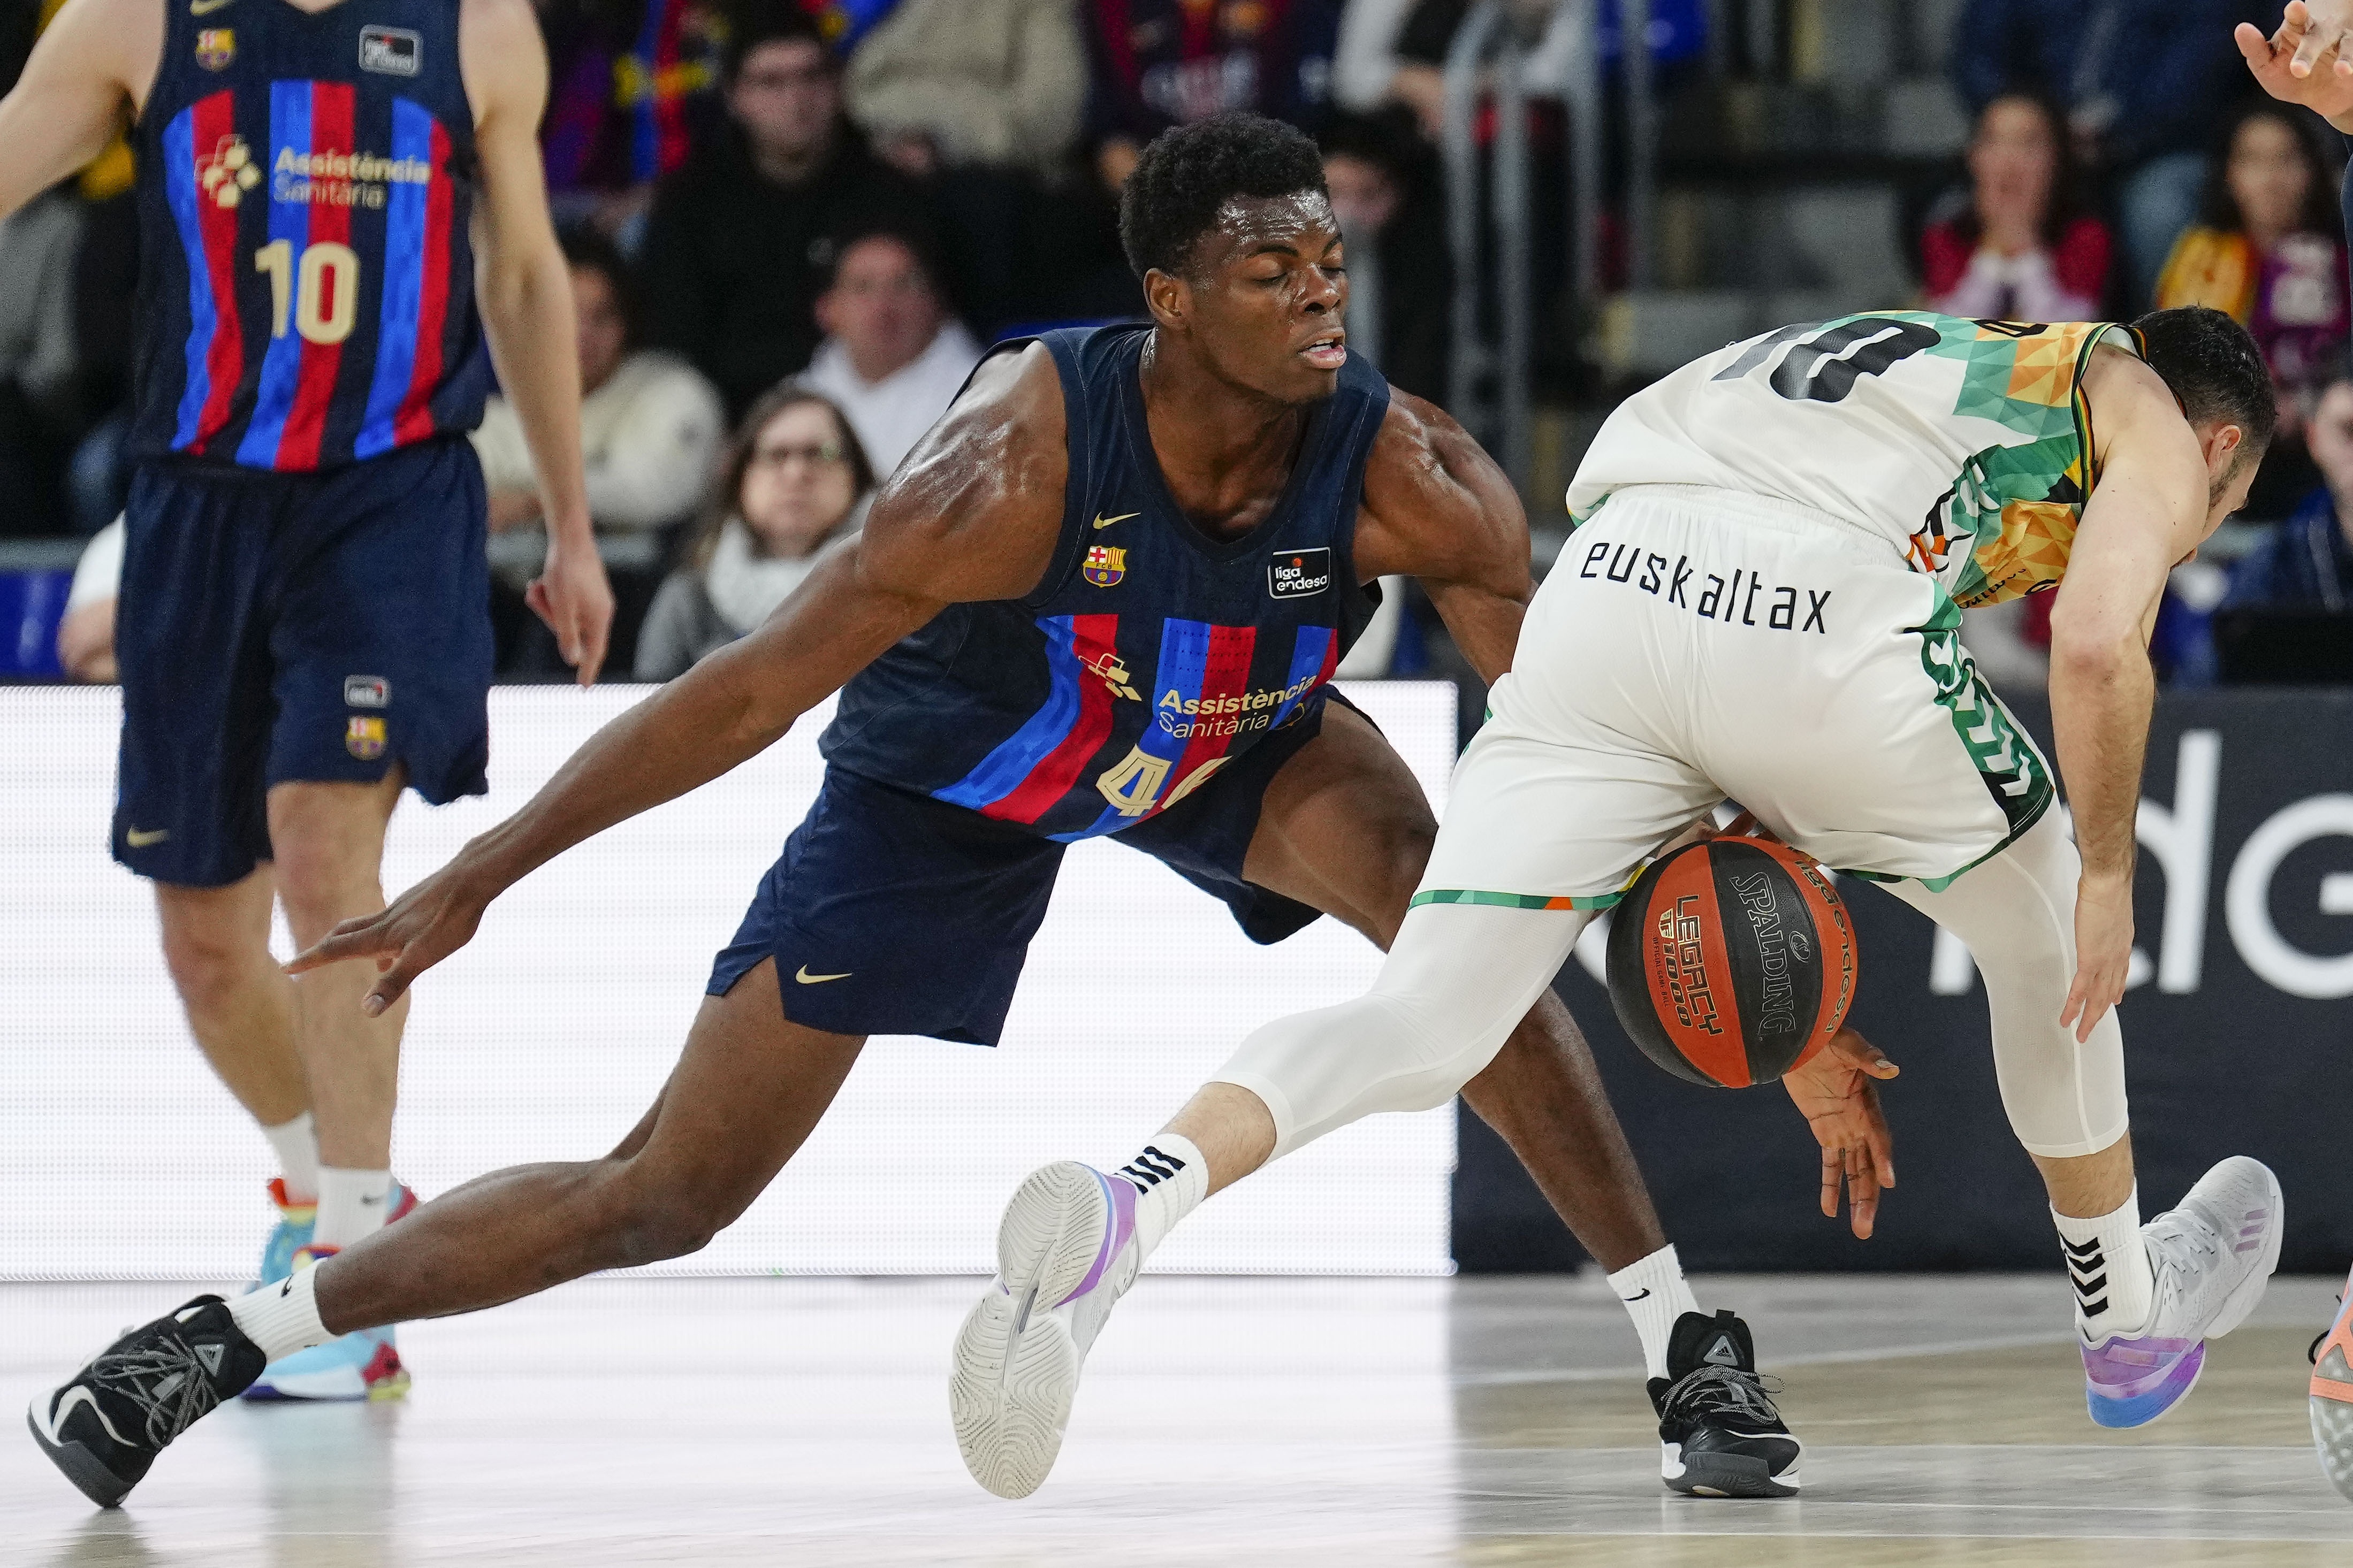 Laprovittola saca su magia ante el Bilbao Basket en el Palau